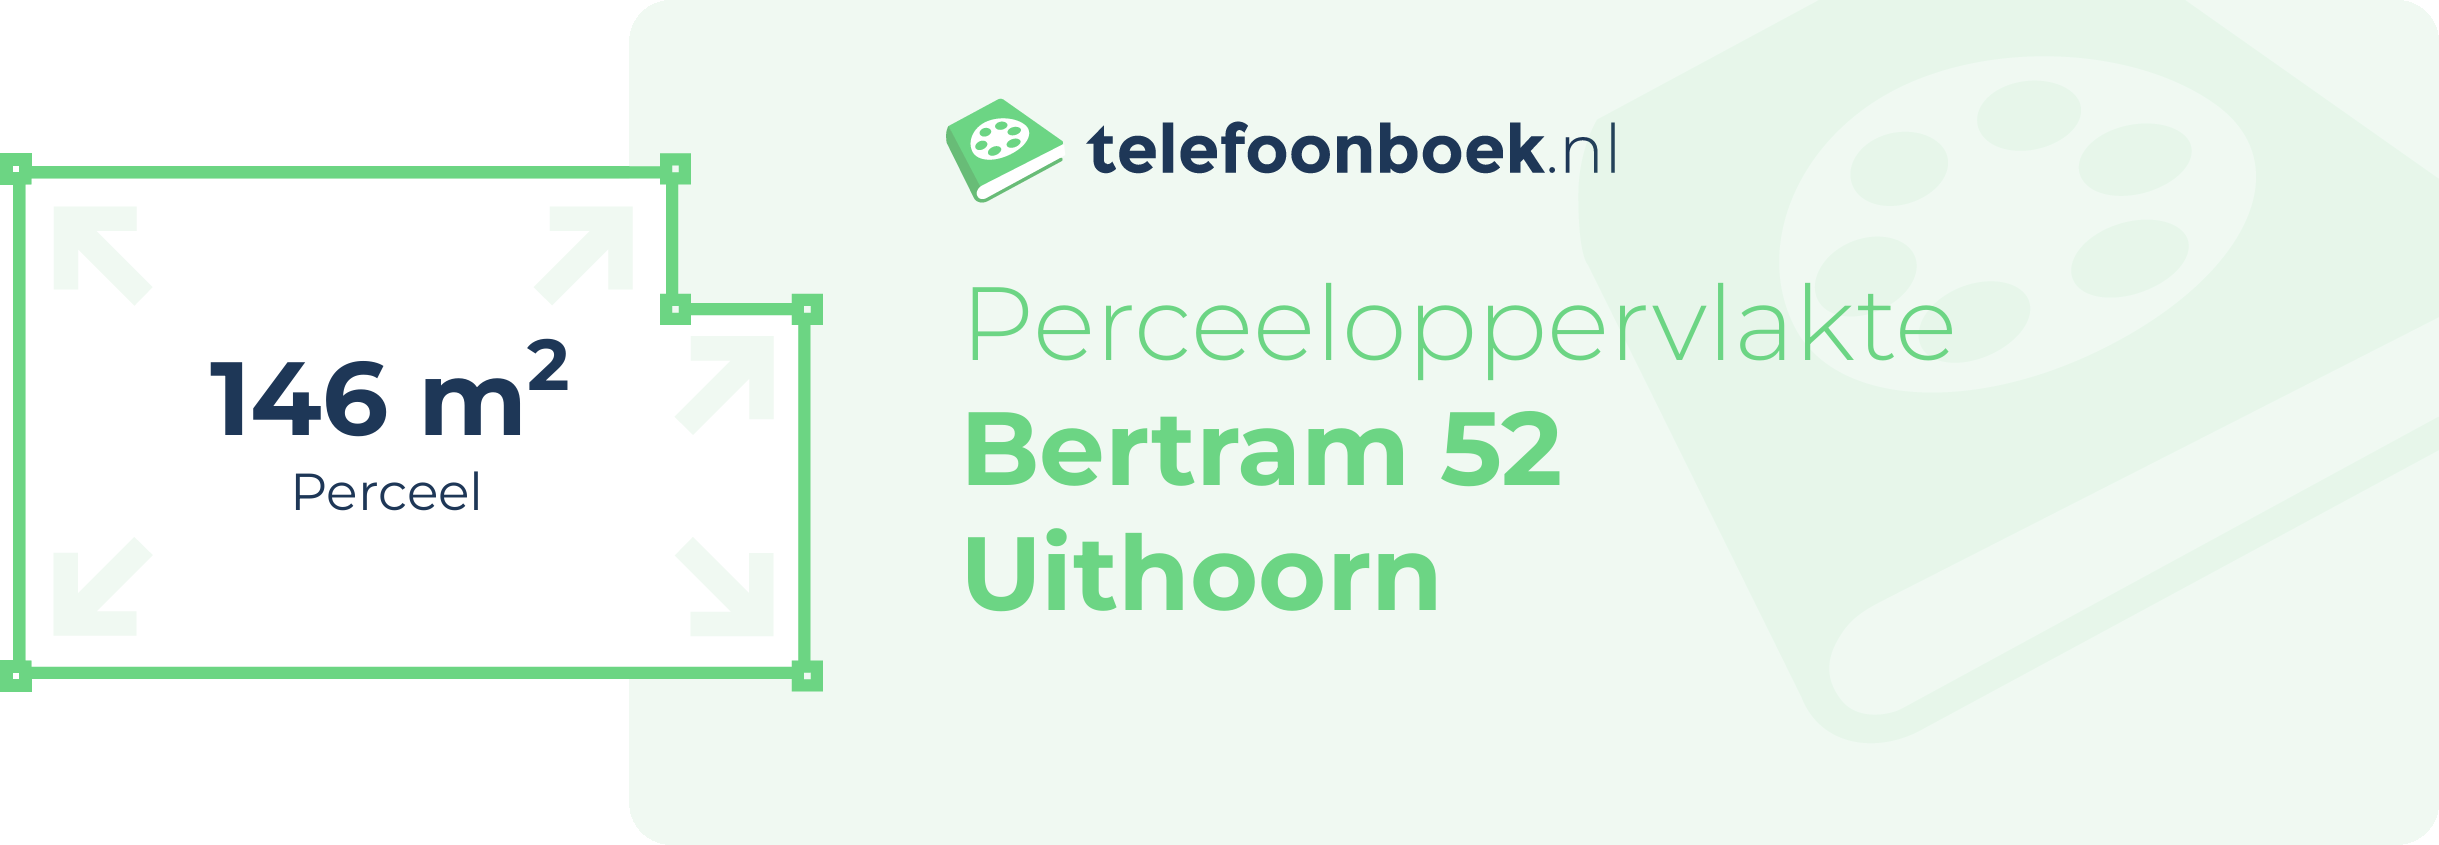 Perceeloppervlakte Bertram 52 Uithoorn